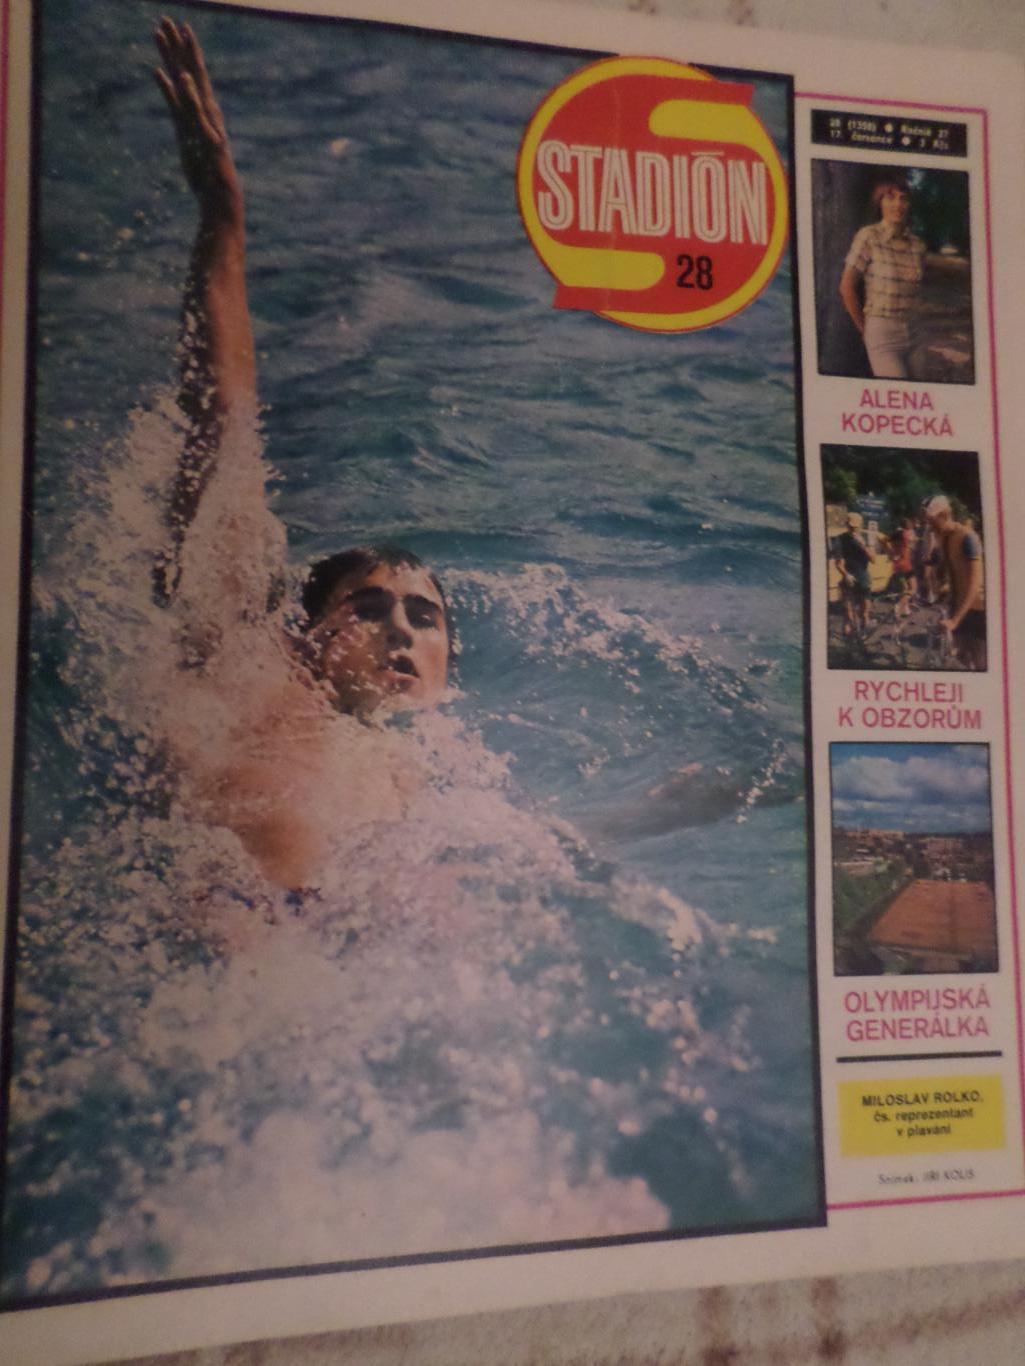 журнал Стадион Чехословакия № 28 1979 г постер Нант